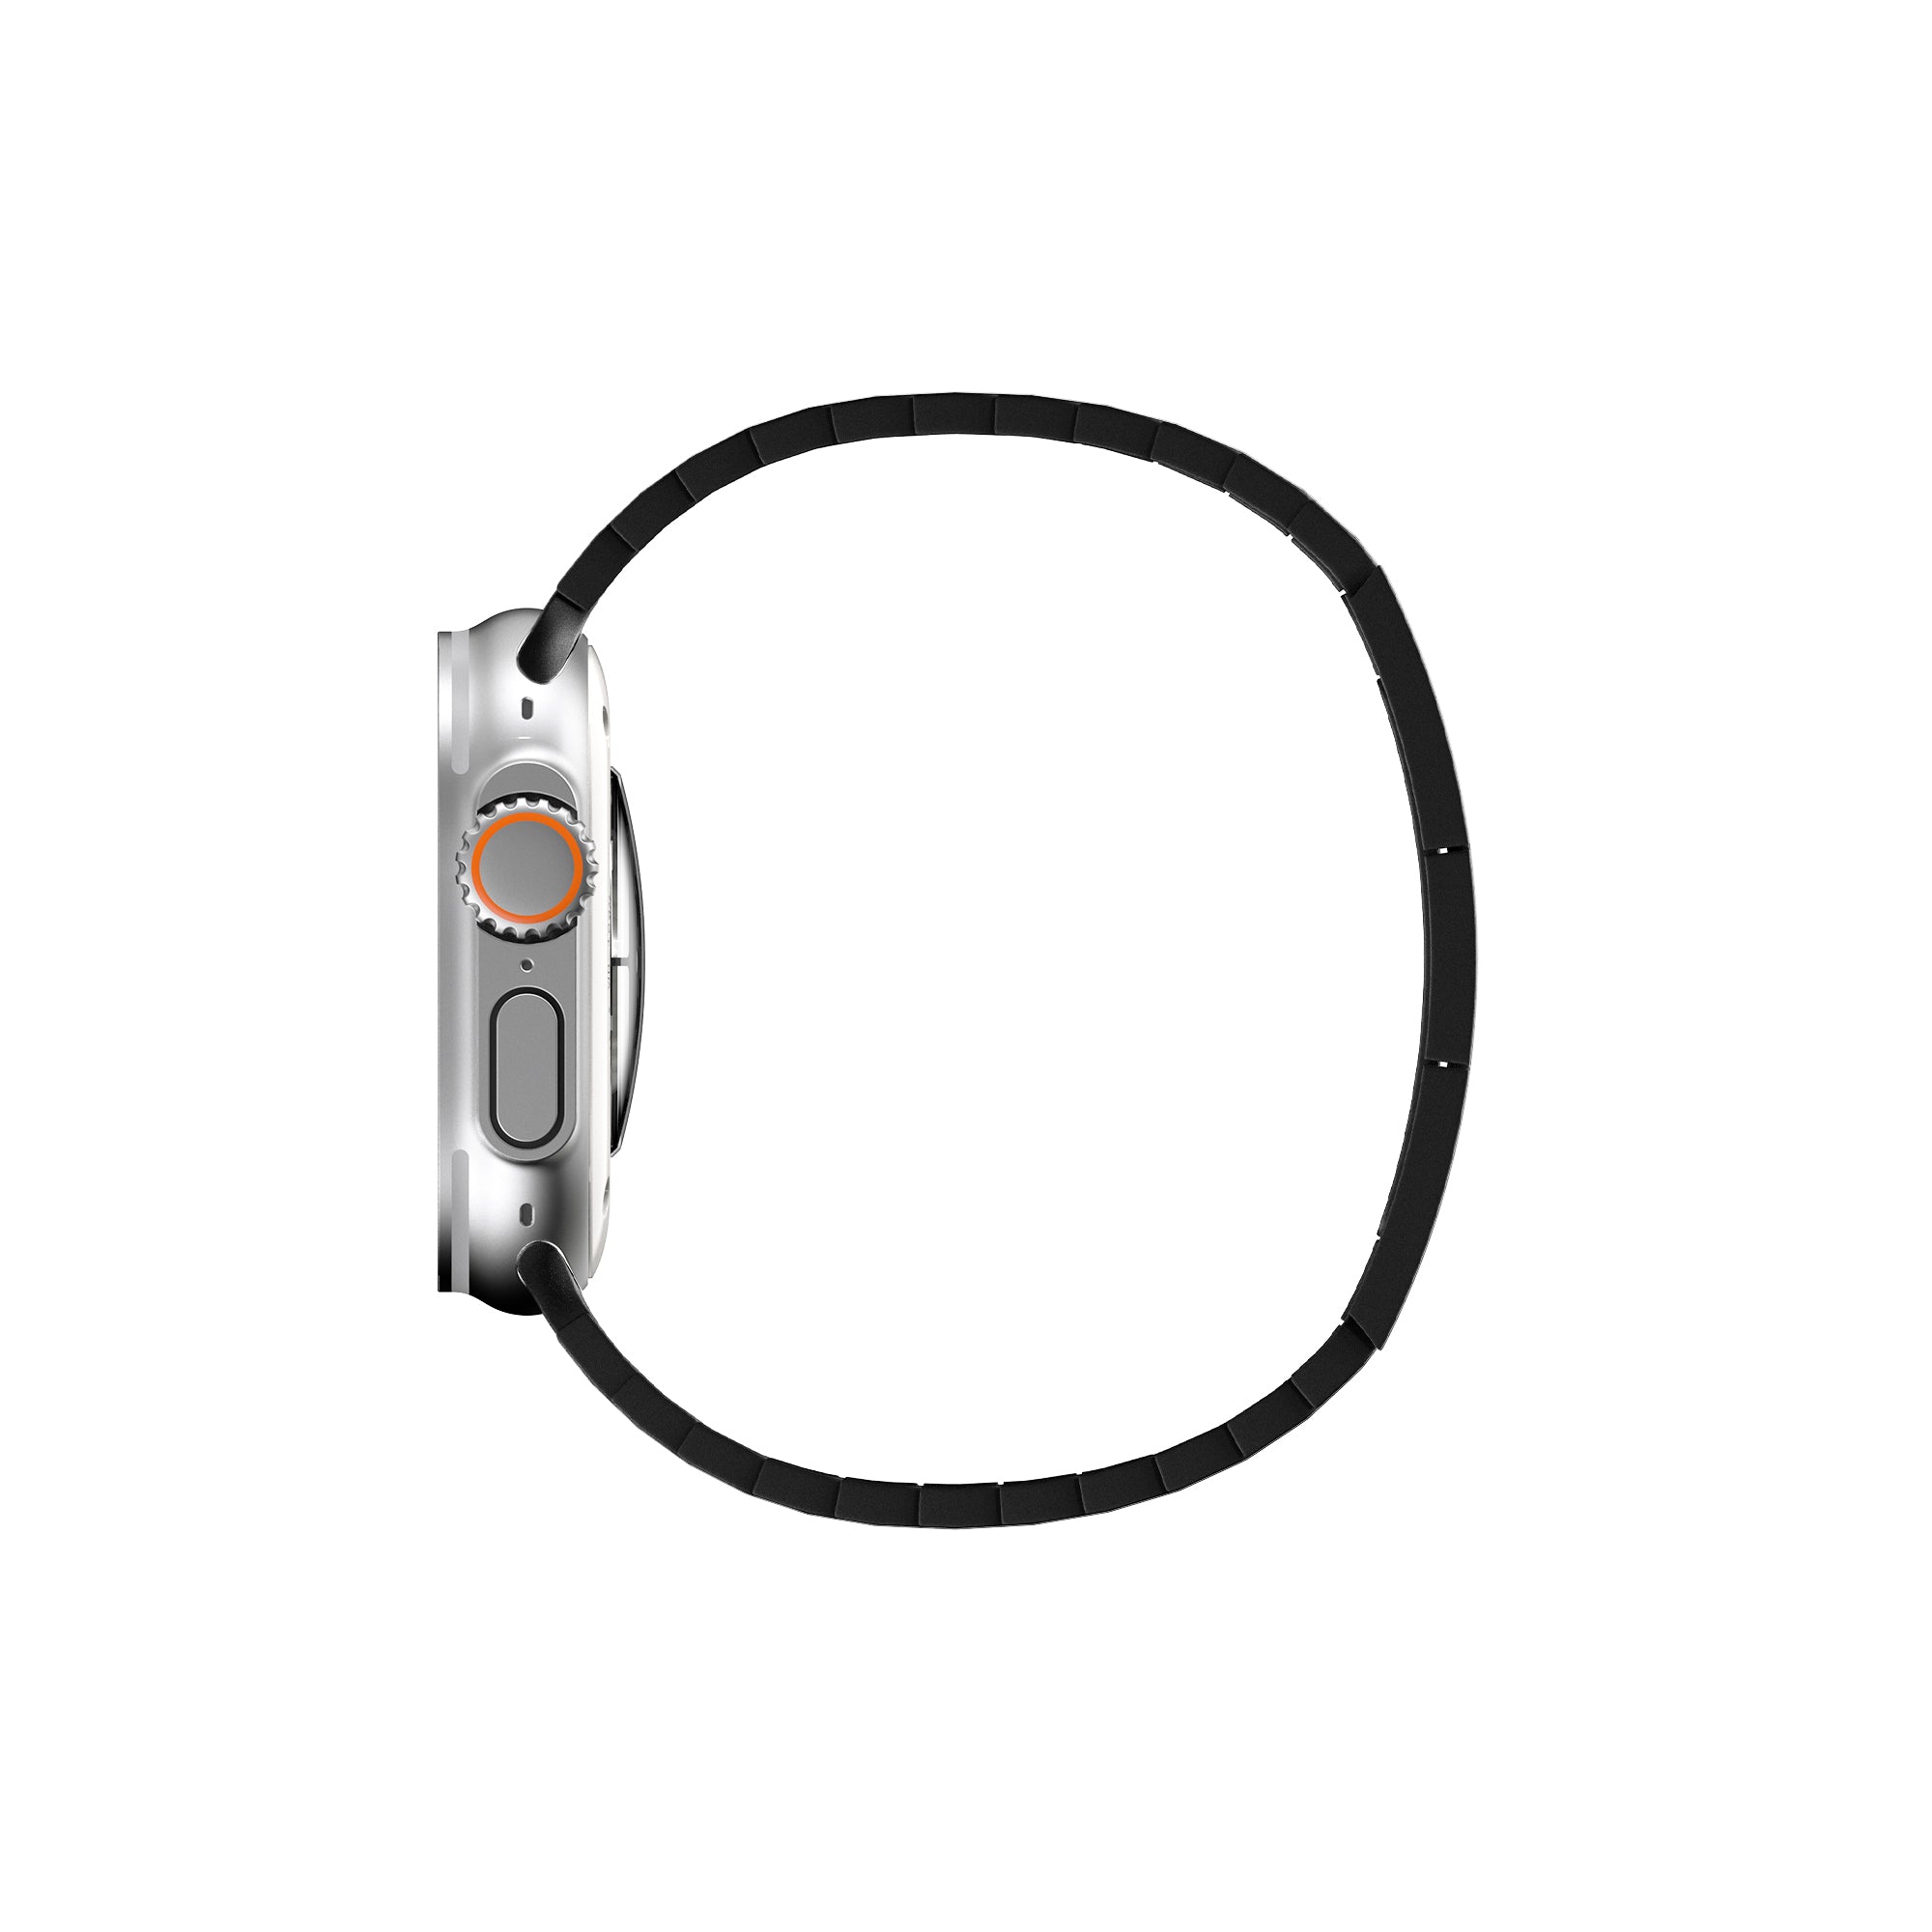 Edelstahl Gliederarmband für Apple Watch - Bluestein